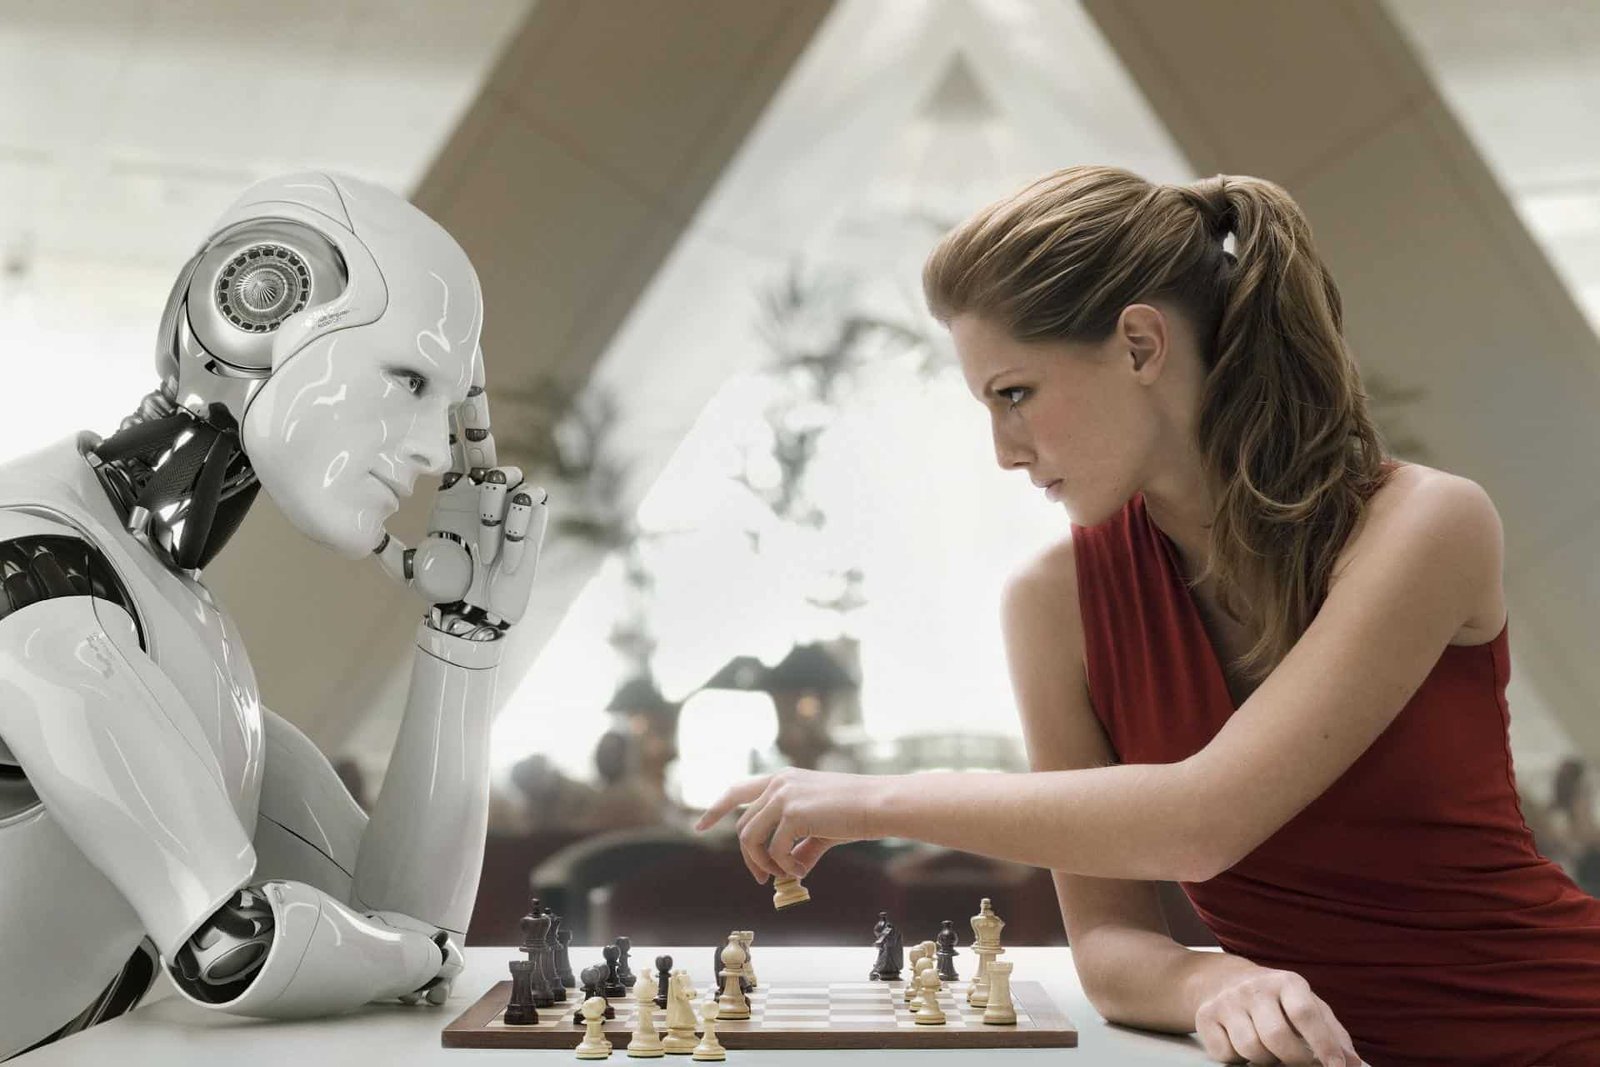 Uma máquina humanóide jogando xadrez com uma mulher